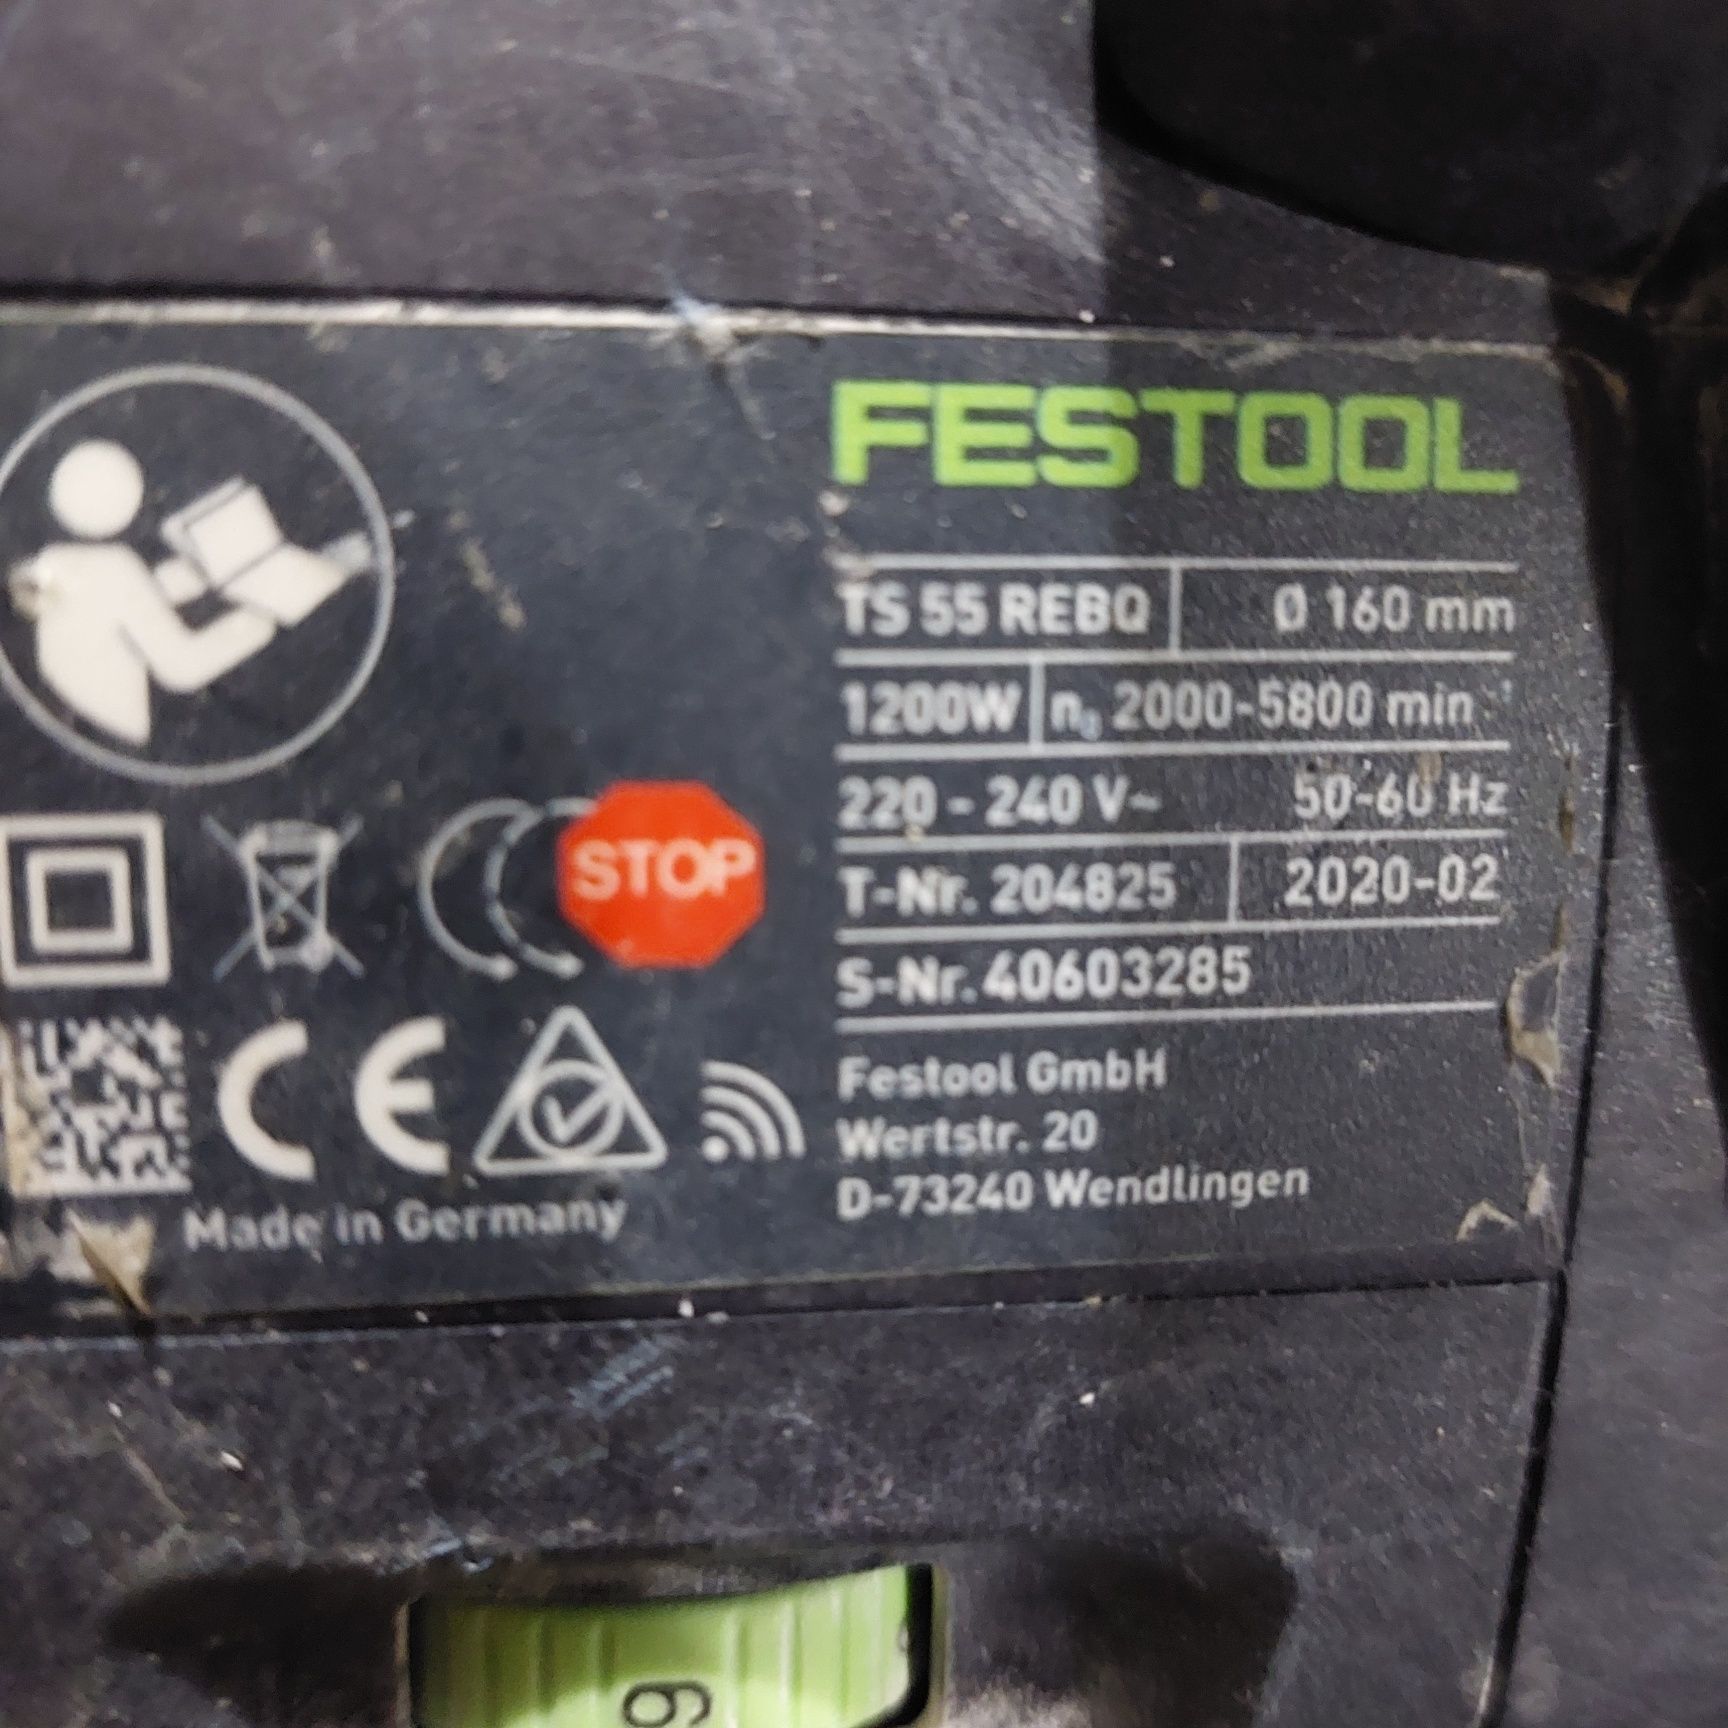 Festool TS 55 REBQ потапящ циркуляр Фестоол